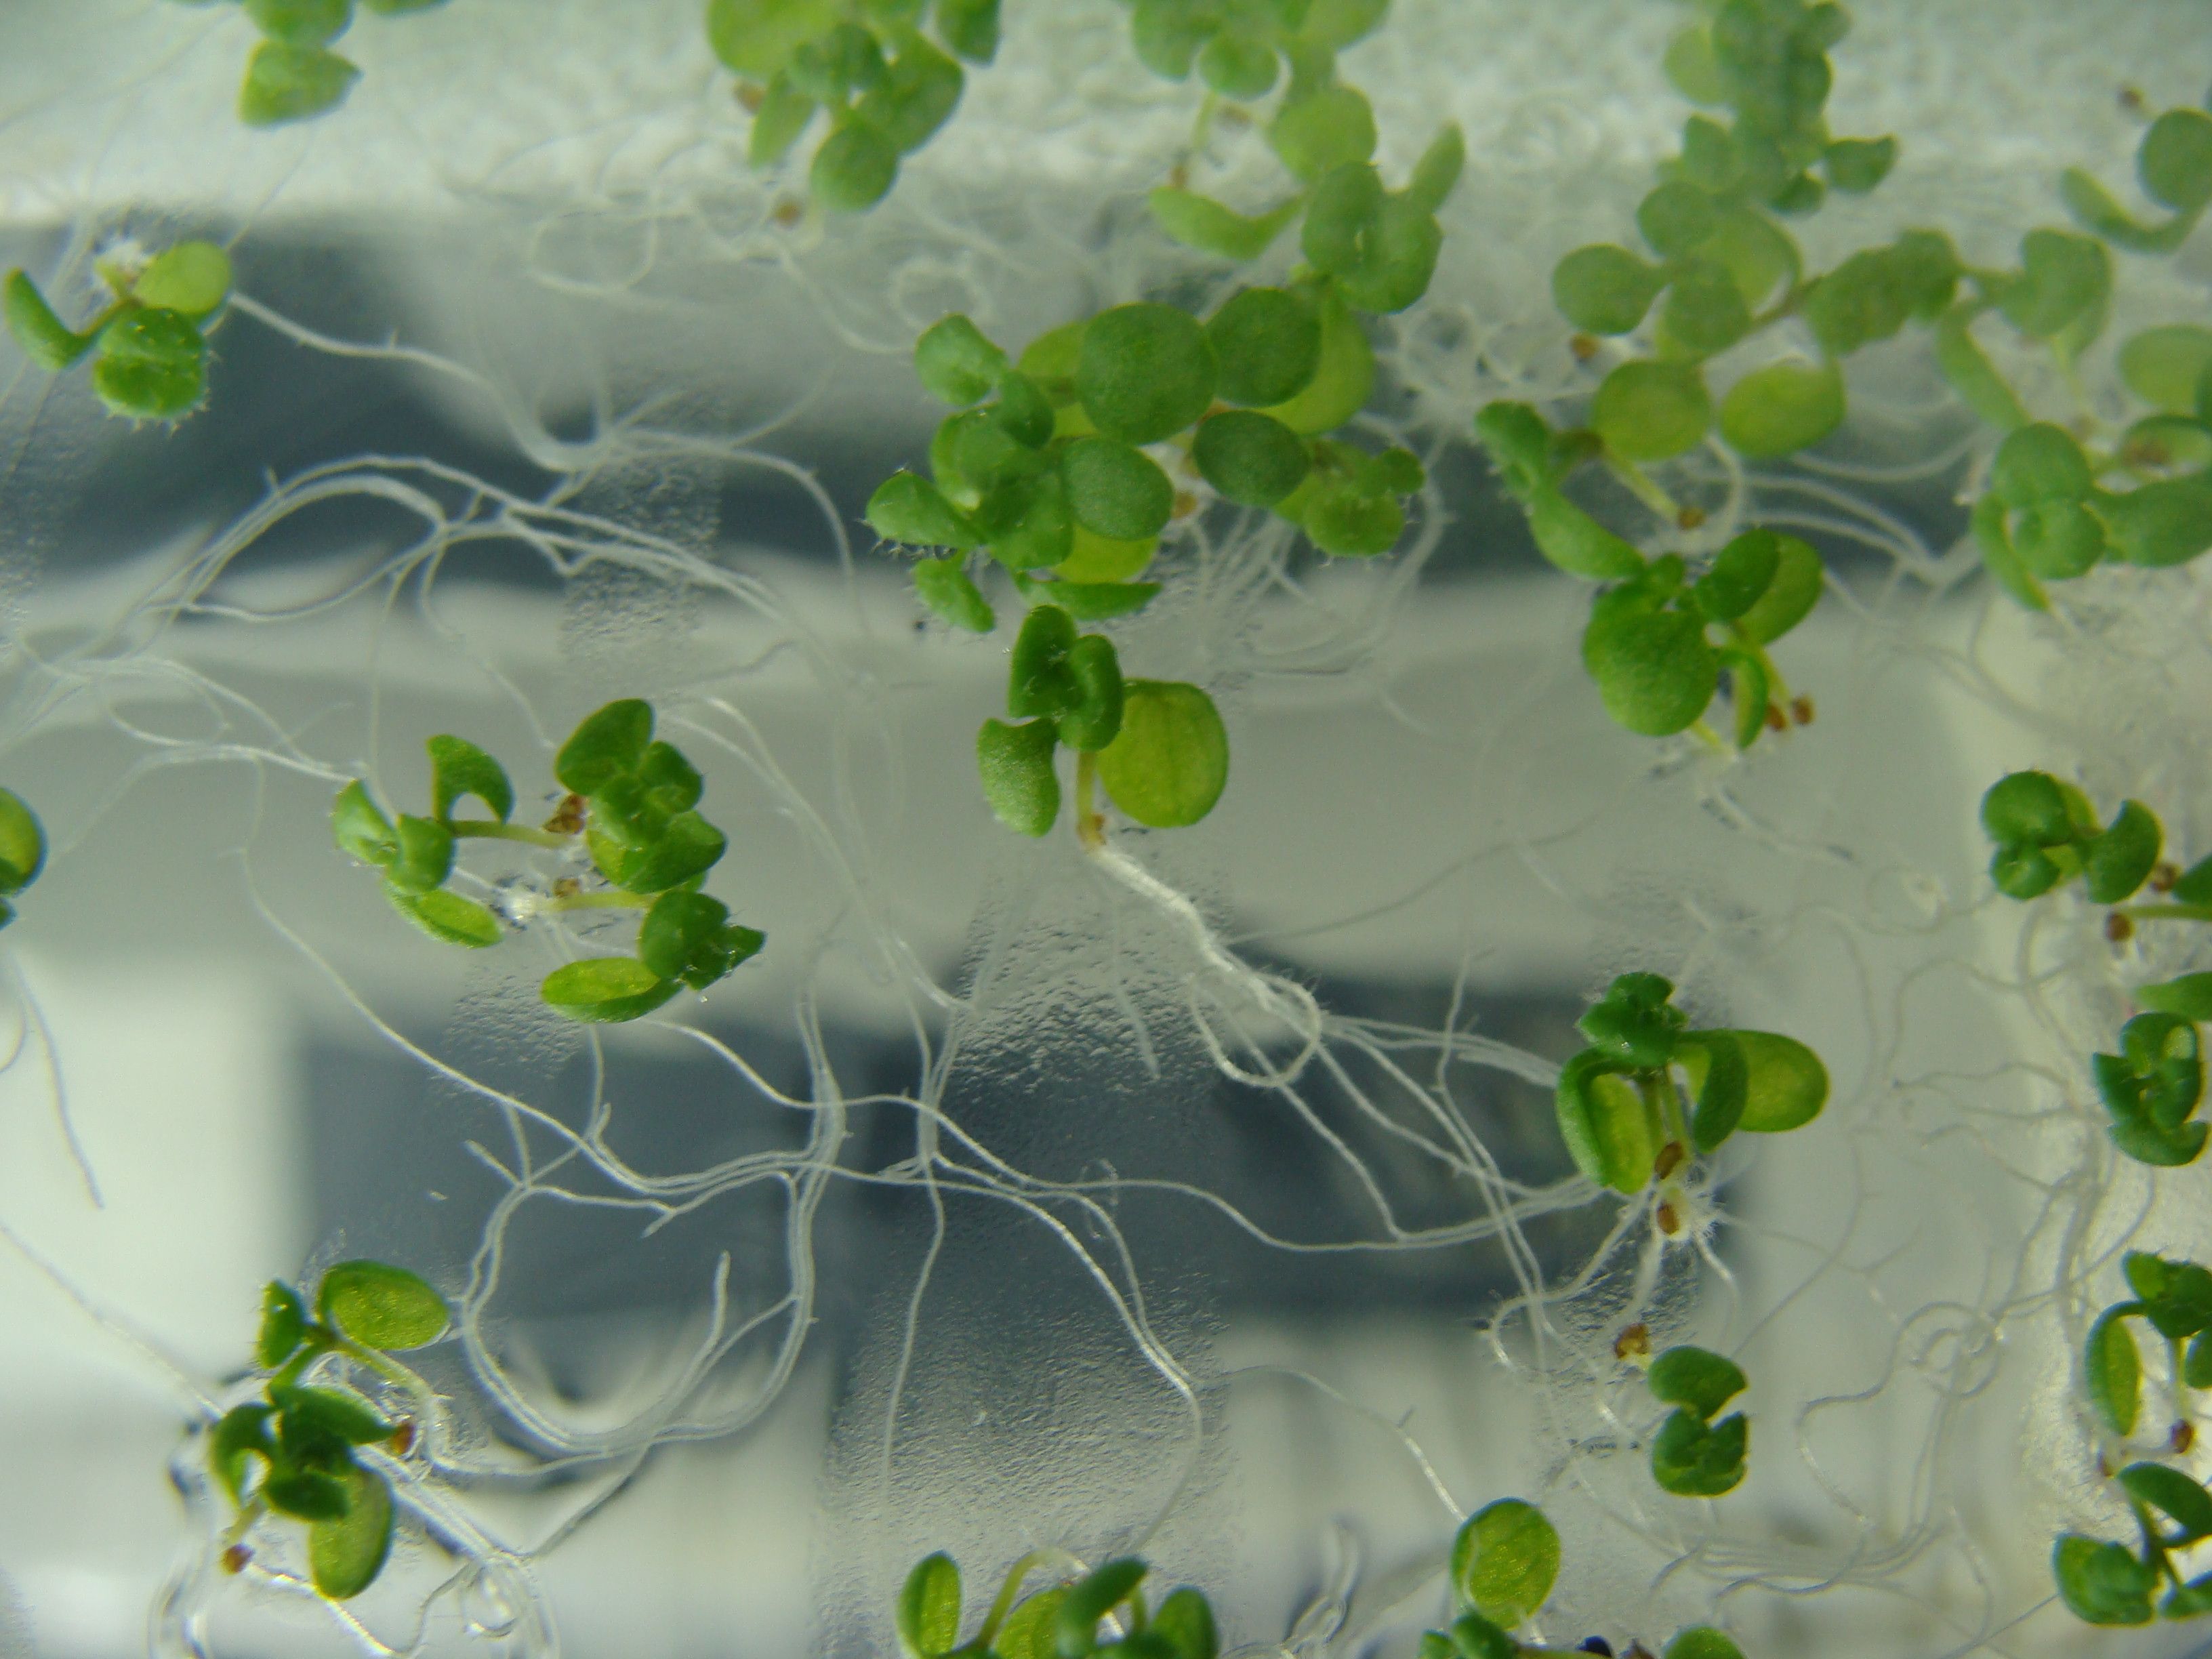 Plu00e1ntulas de arabidopsis creciendo en medio su00f3lido nutritivo